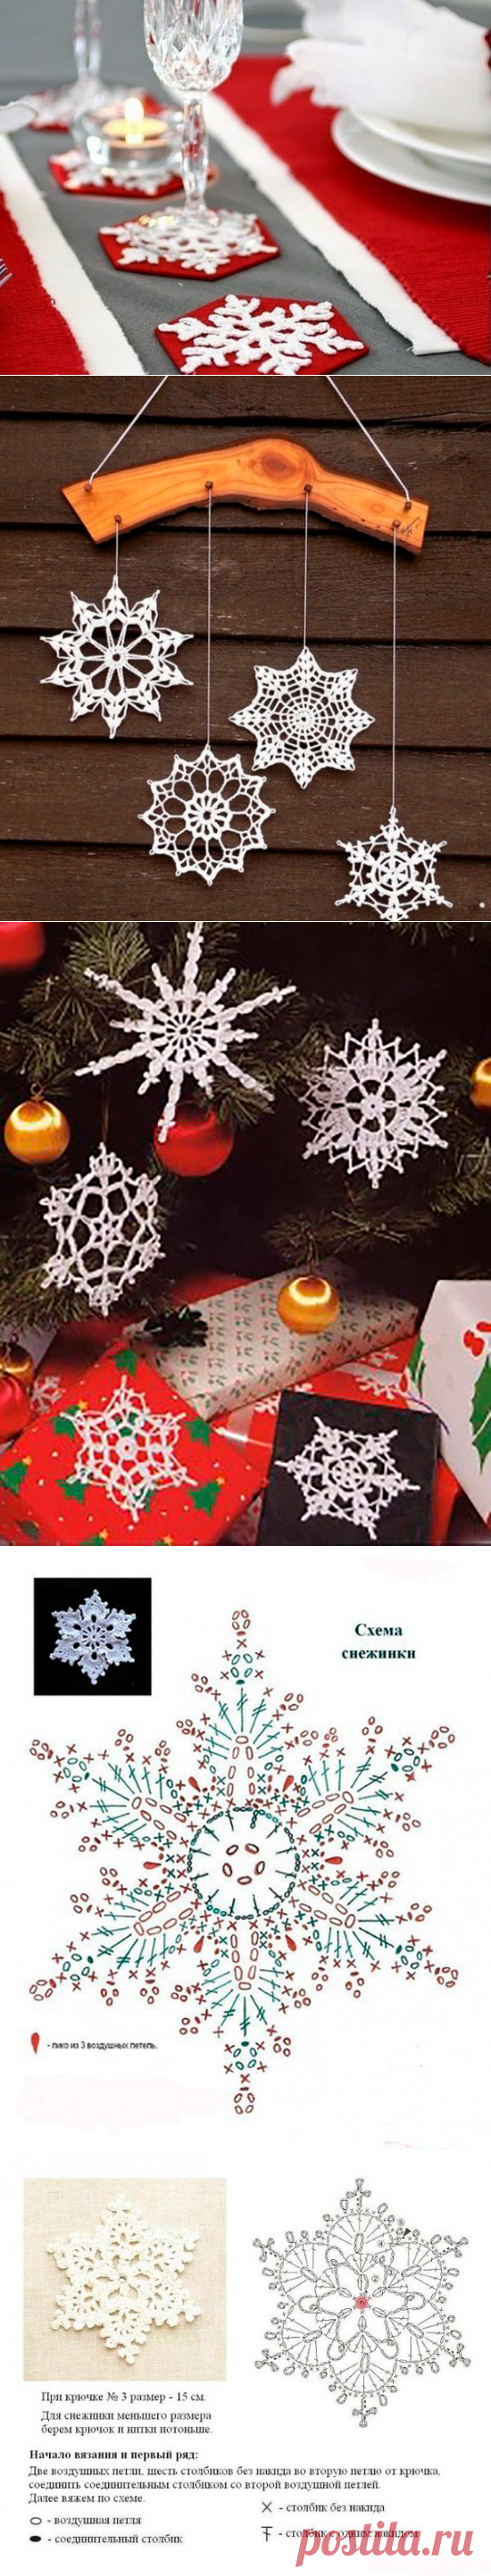 Украшаем дом новогодними снежинками: 58 вариантов вязания крючком